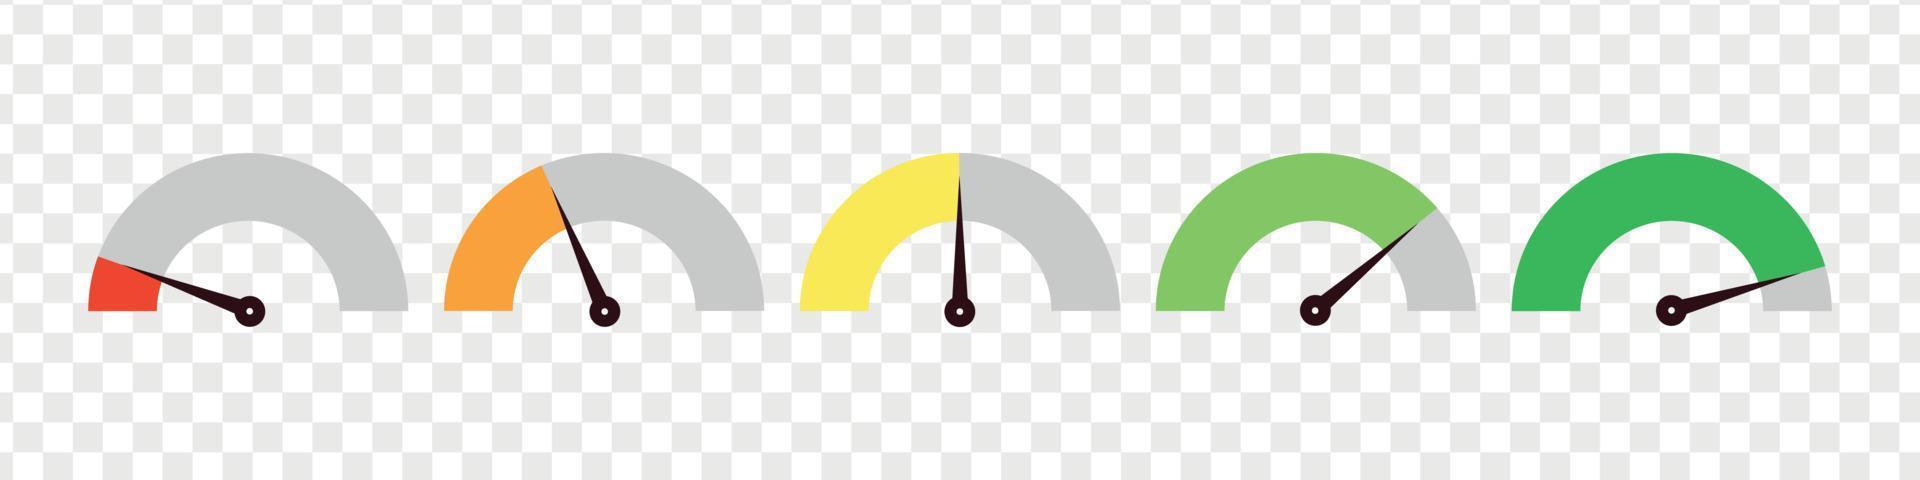 Satz Tacho, Kurzwahlanzeige. grüne und rote, niedrige und hohe Barometer, schlechte und gute Stufe oder Risikoskala. vektor isolierte illustration